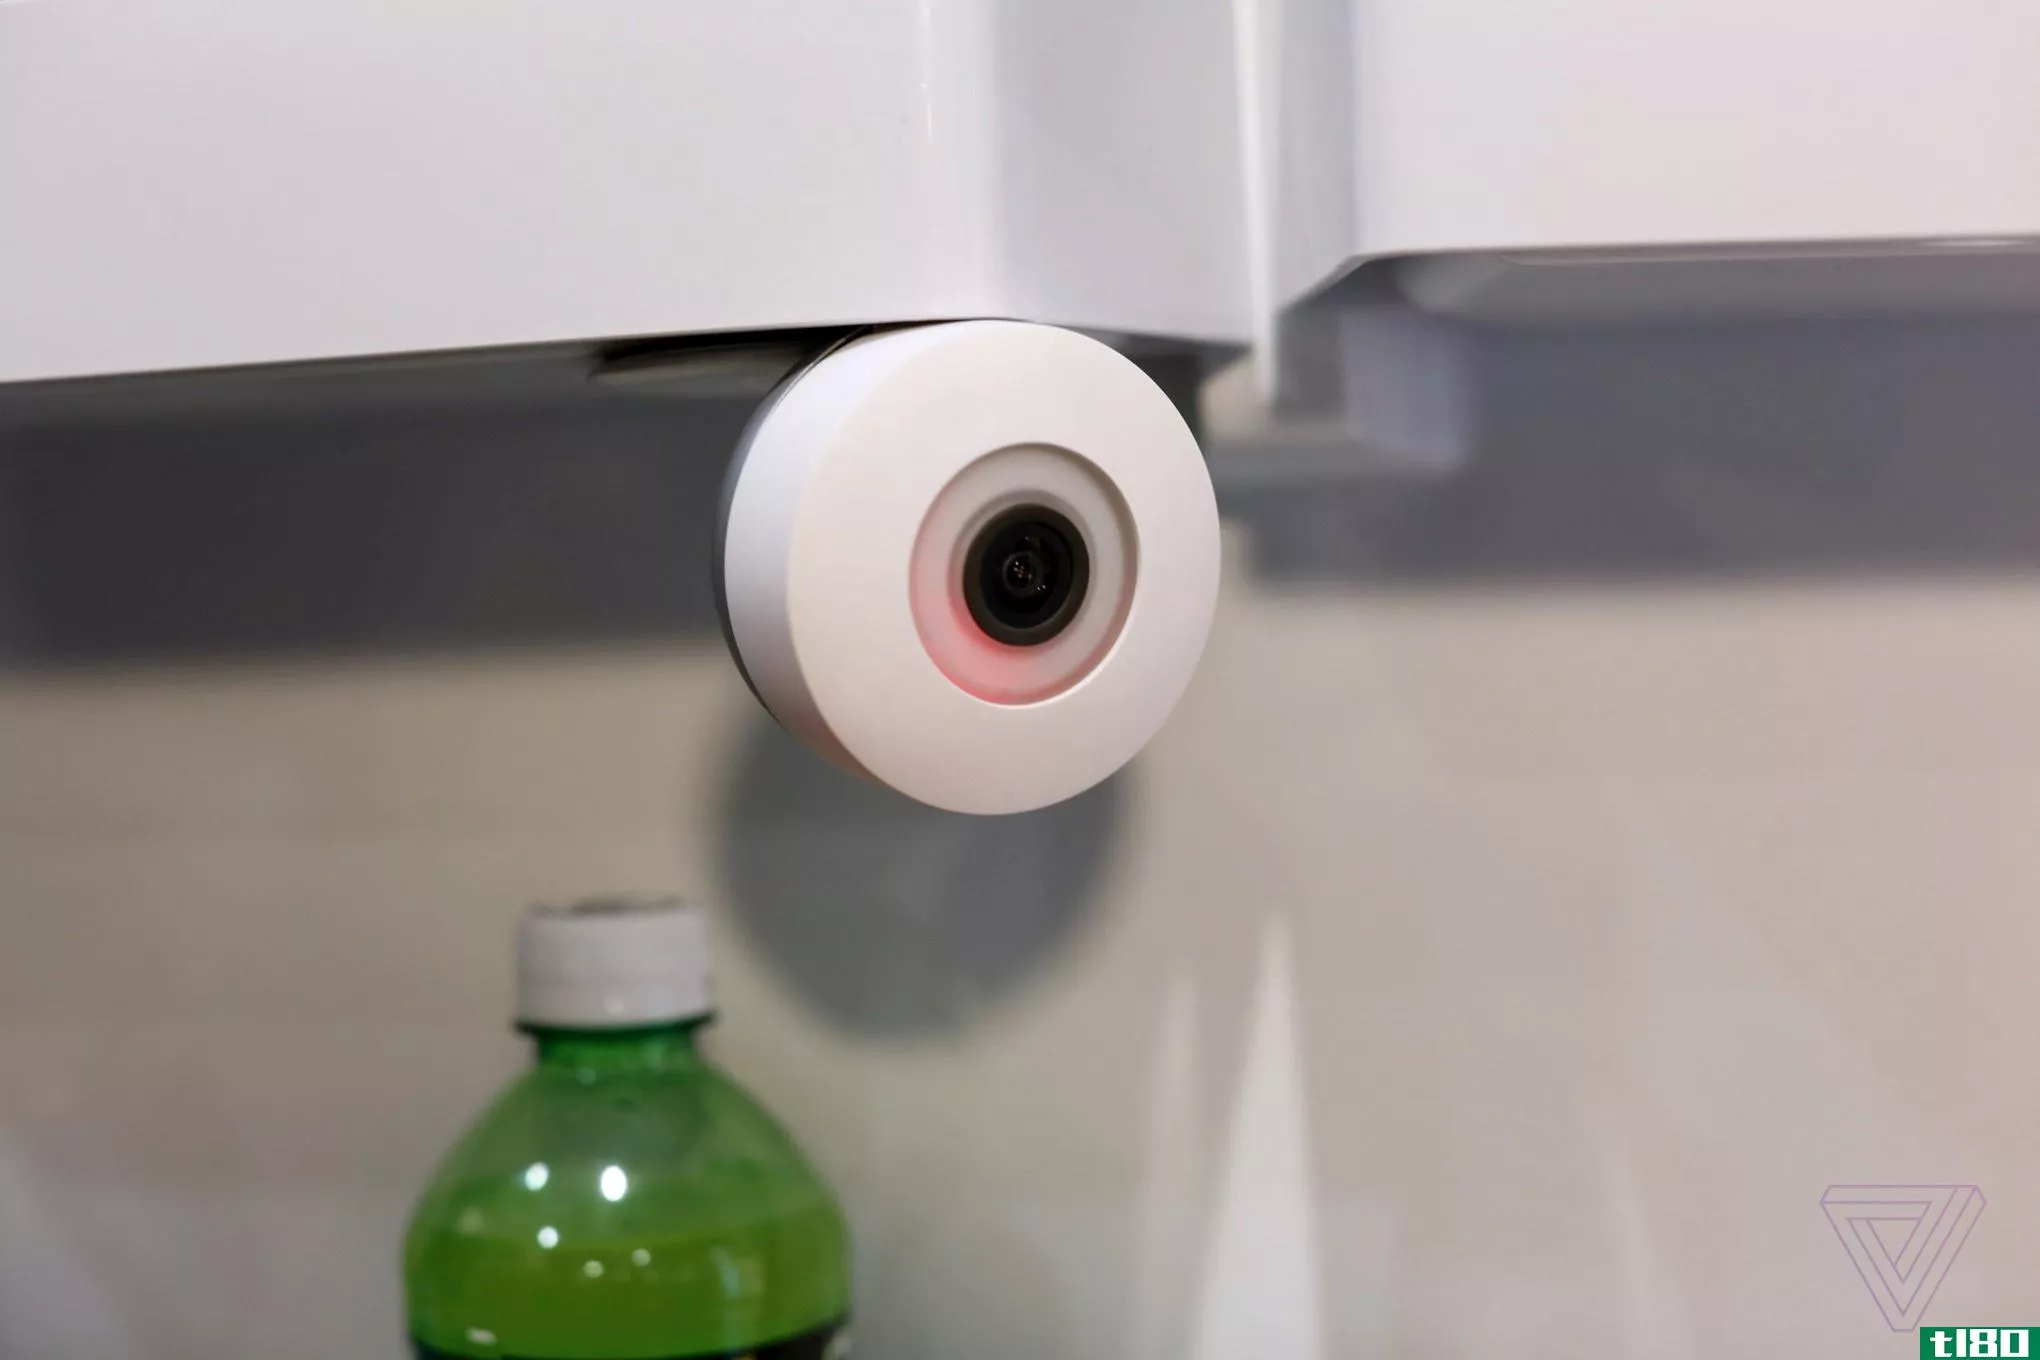 冰箱摄像头监视你的冰箱，告诉你做什么